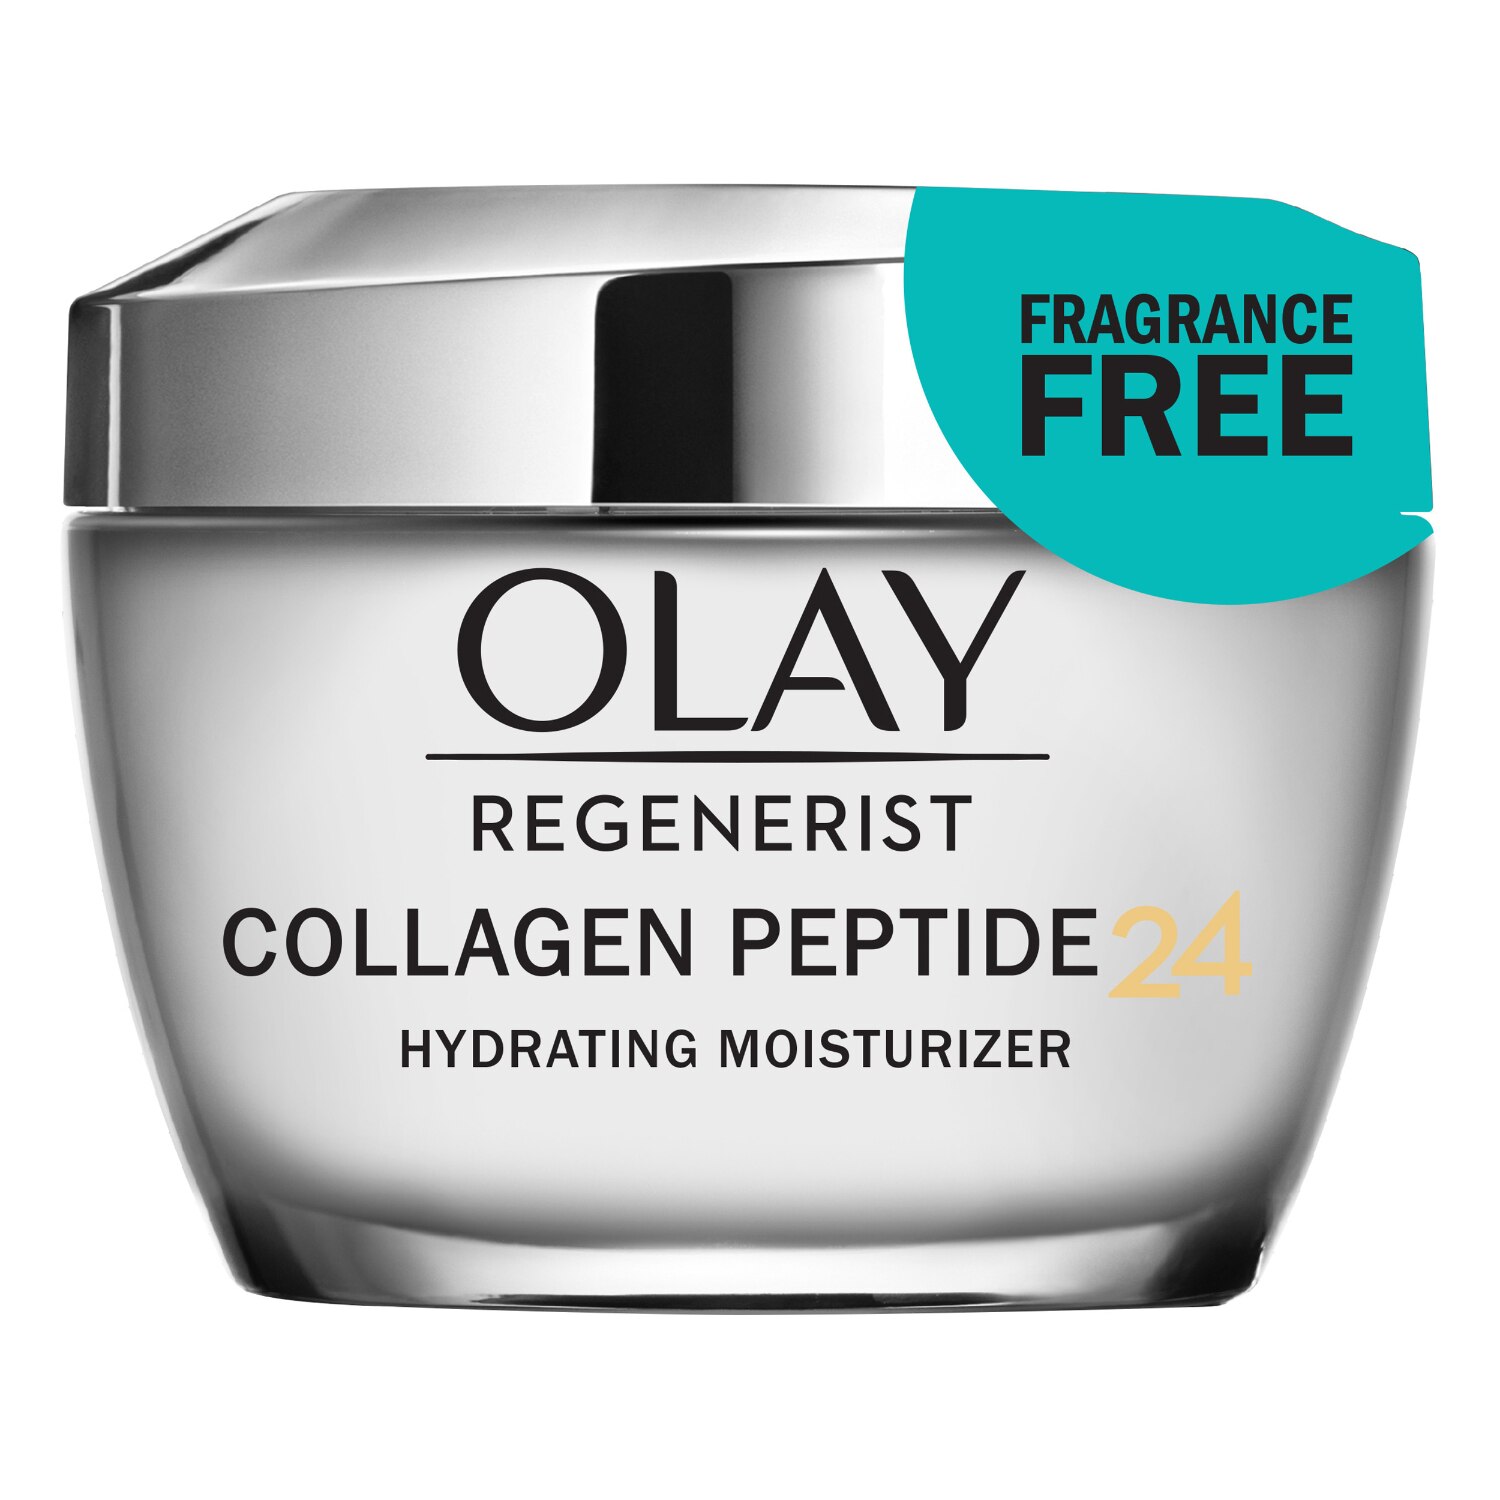 Olay Regenerist Collagen Peptide 24 - Crema hidratante facial, sin fragancia, 1.7 oz